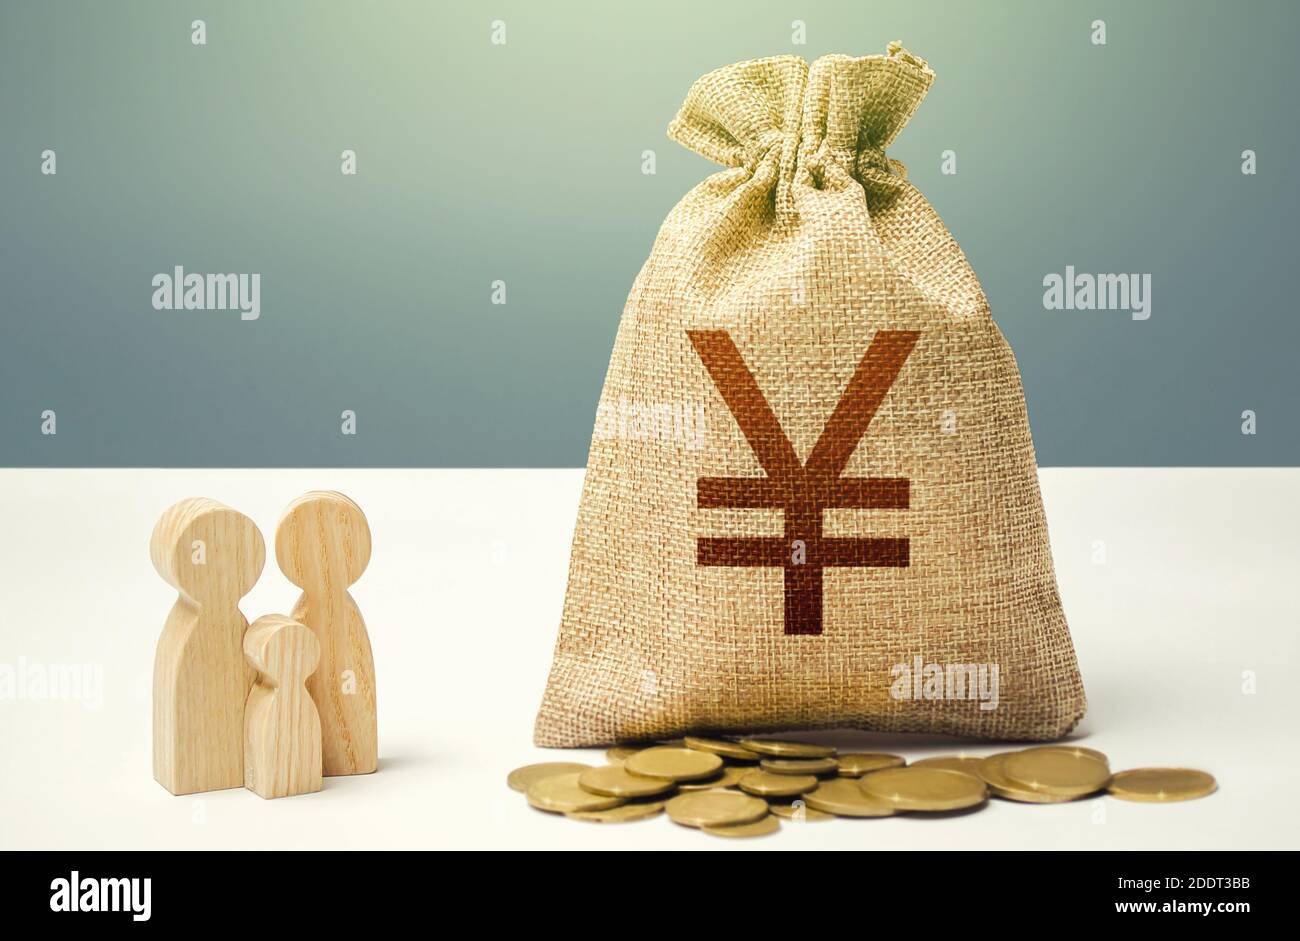 Borsa Yuan Yen con soldi e figurine di famiglia. Sostegno finanziario alle istituzioni sociali. Investimenti in capitale umano, cultura e progetti sociali Foto Stock